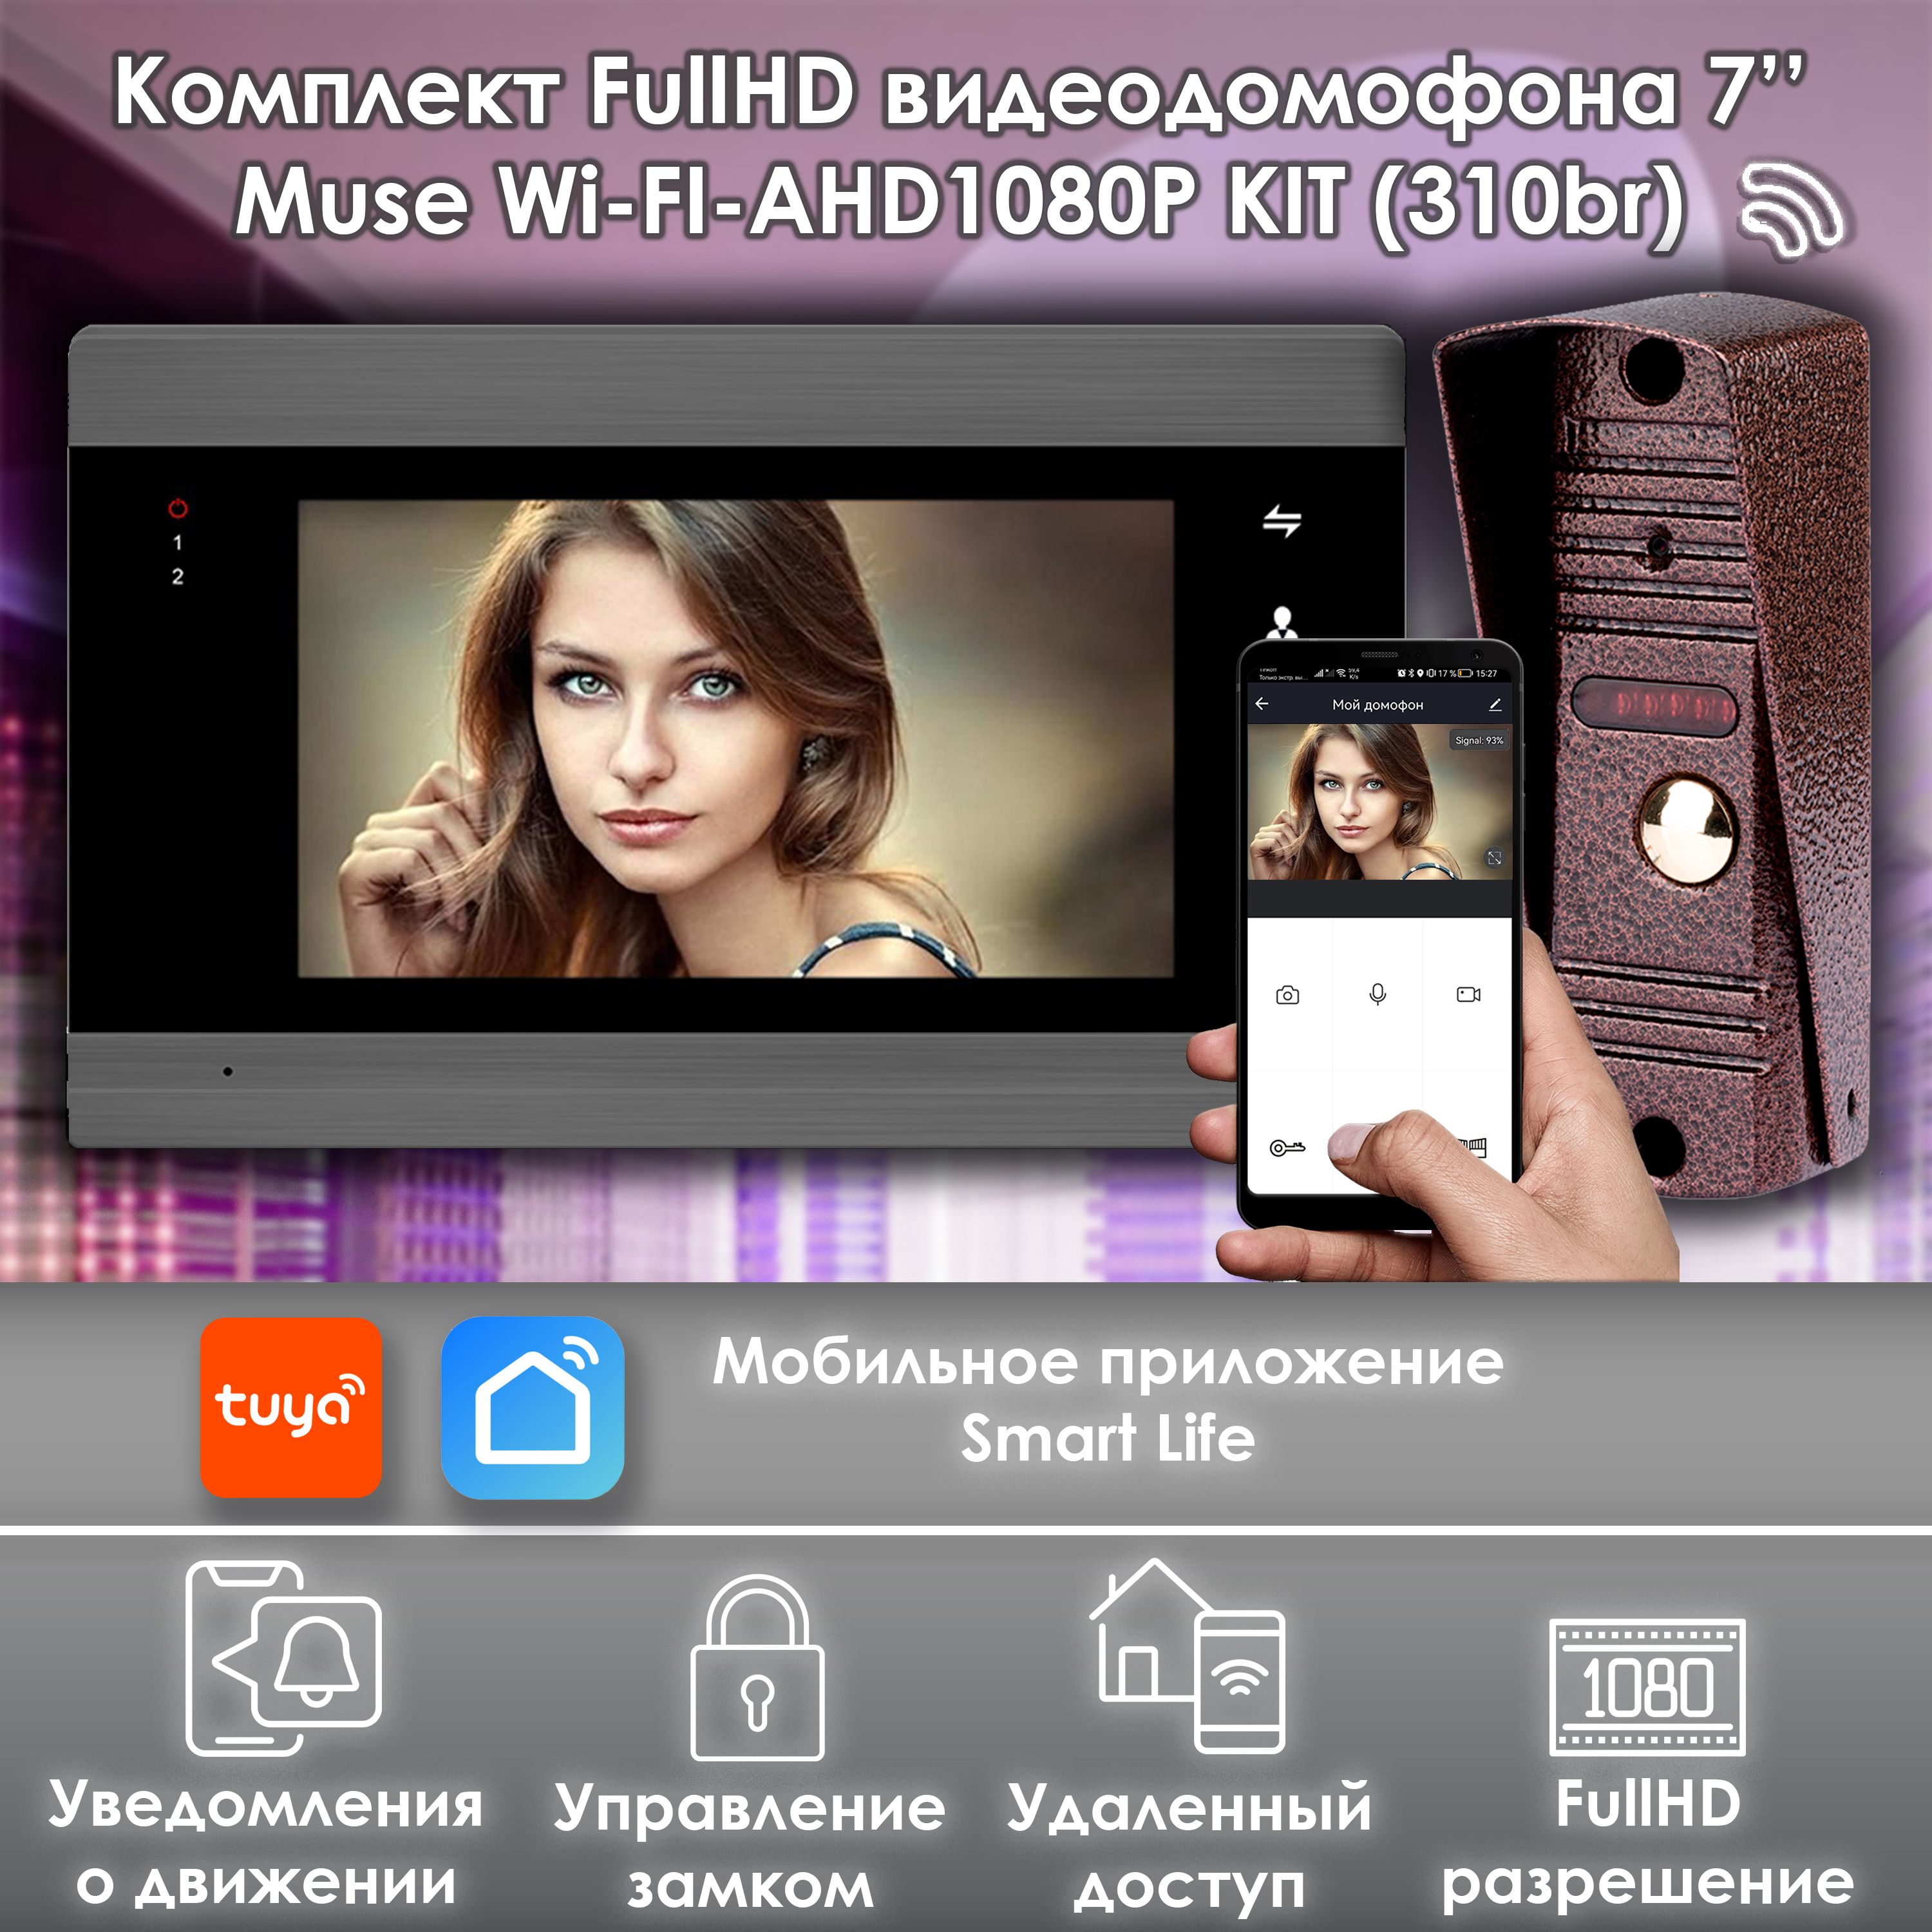 комплект видеодомофона alfavision vika kit wifi 310sl Комплект видеодомофона Alfavision MUSE WIFI-KIT (310br) Full HD 7 дюймов